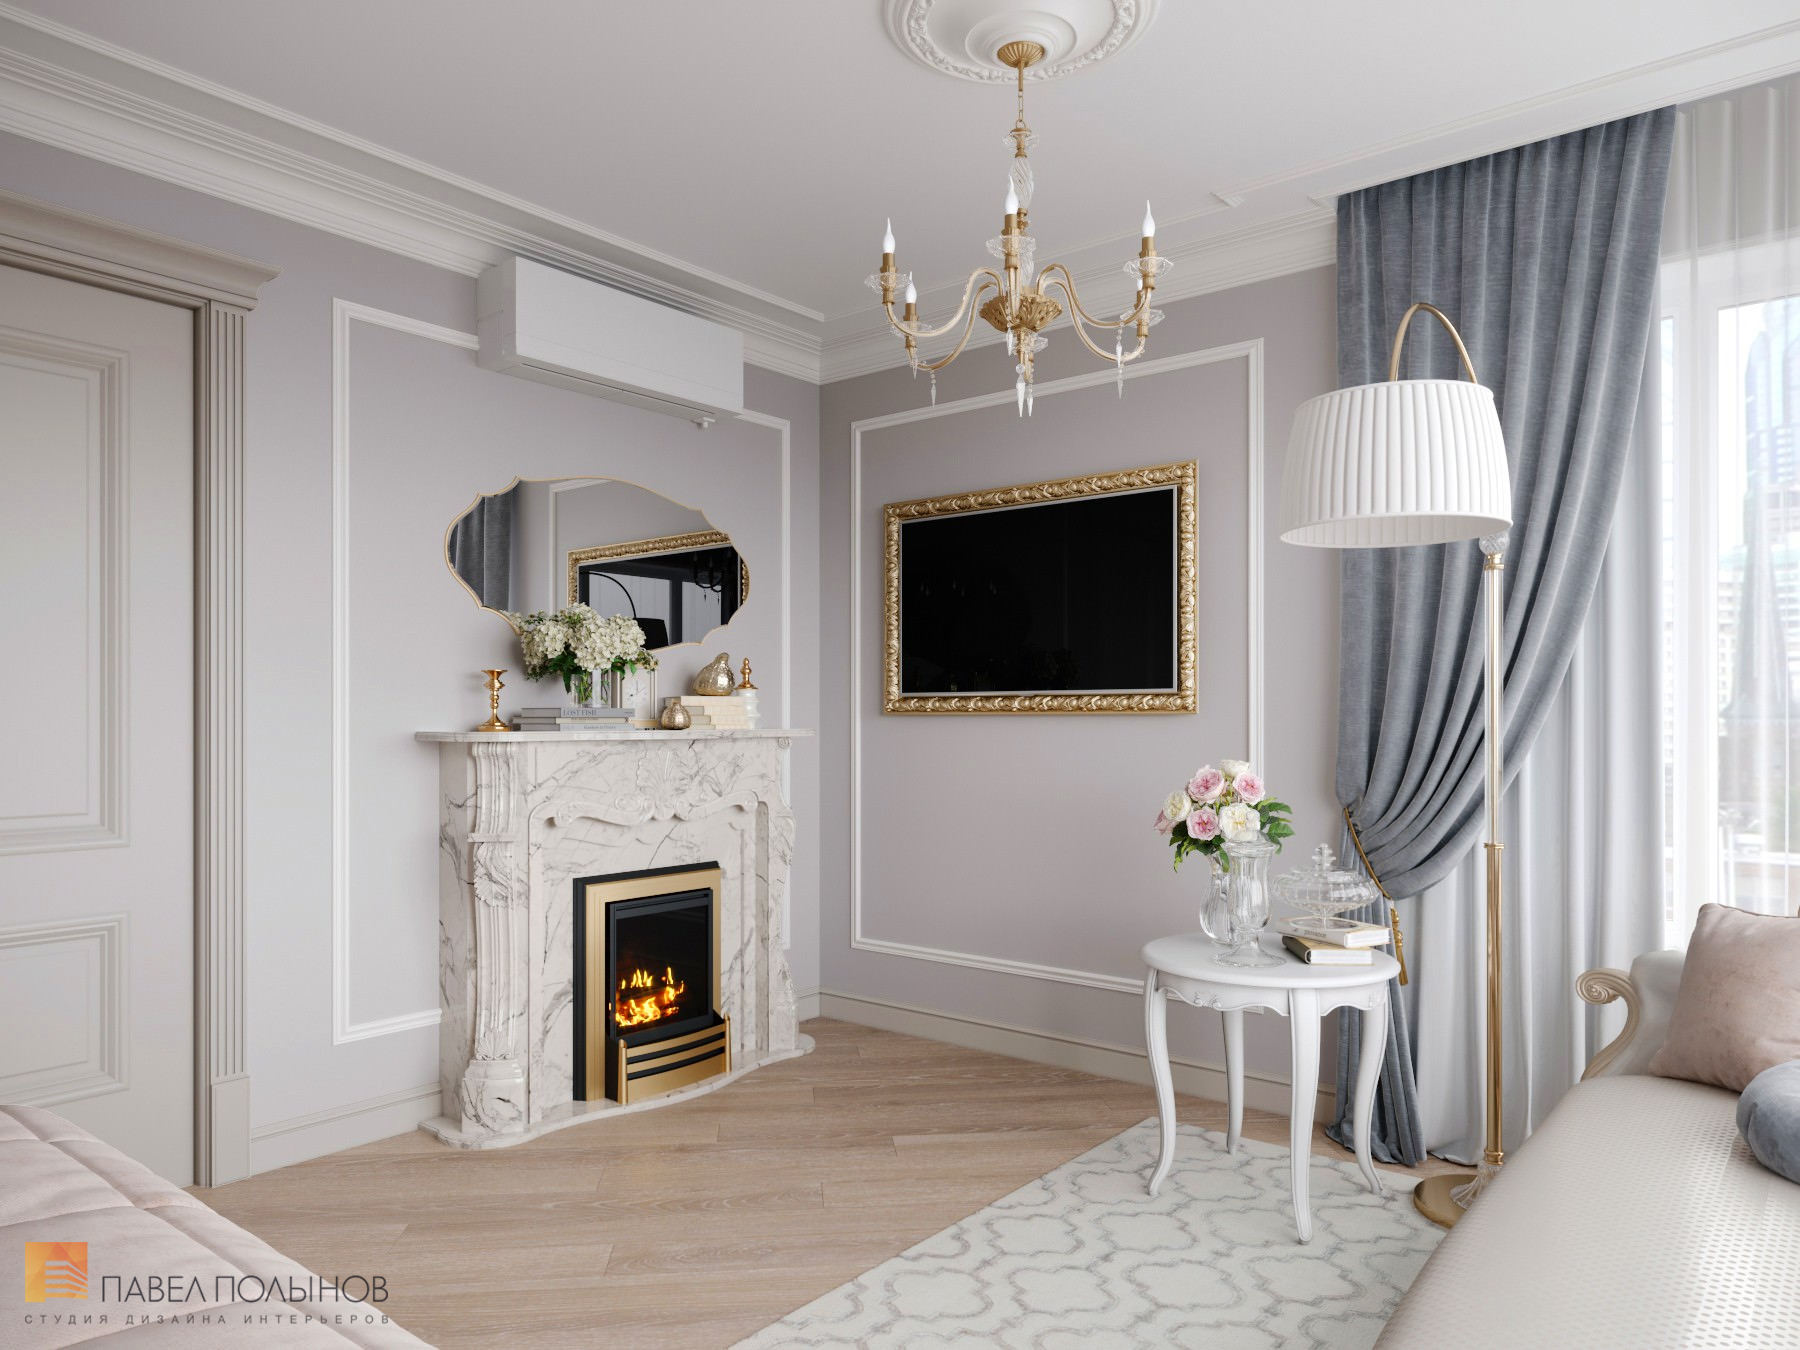 Фото дизайн интерьера спальни из проекта «Дизайн квартиры в стиле современной классики, ЖК «Riverside», 180 кв.м.»